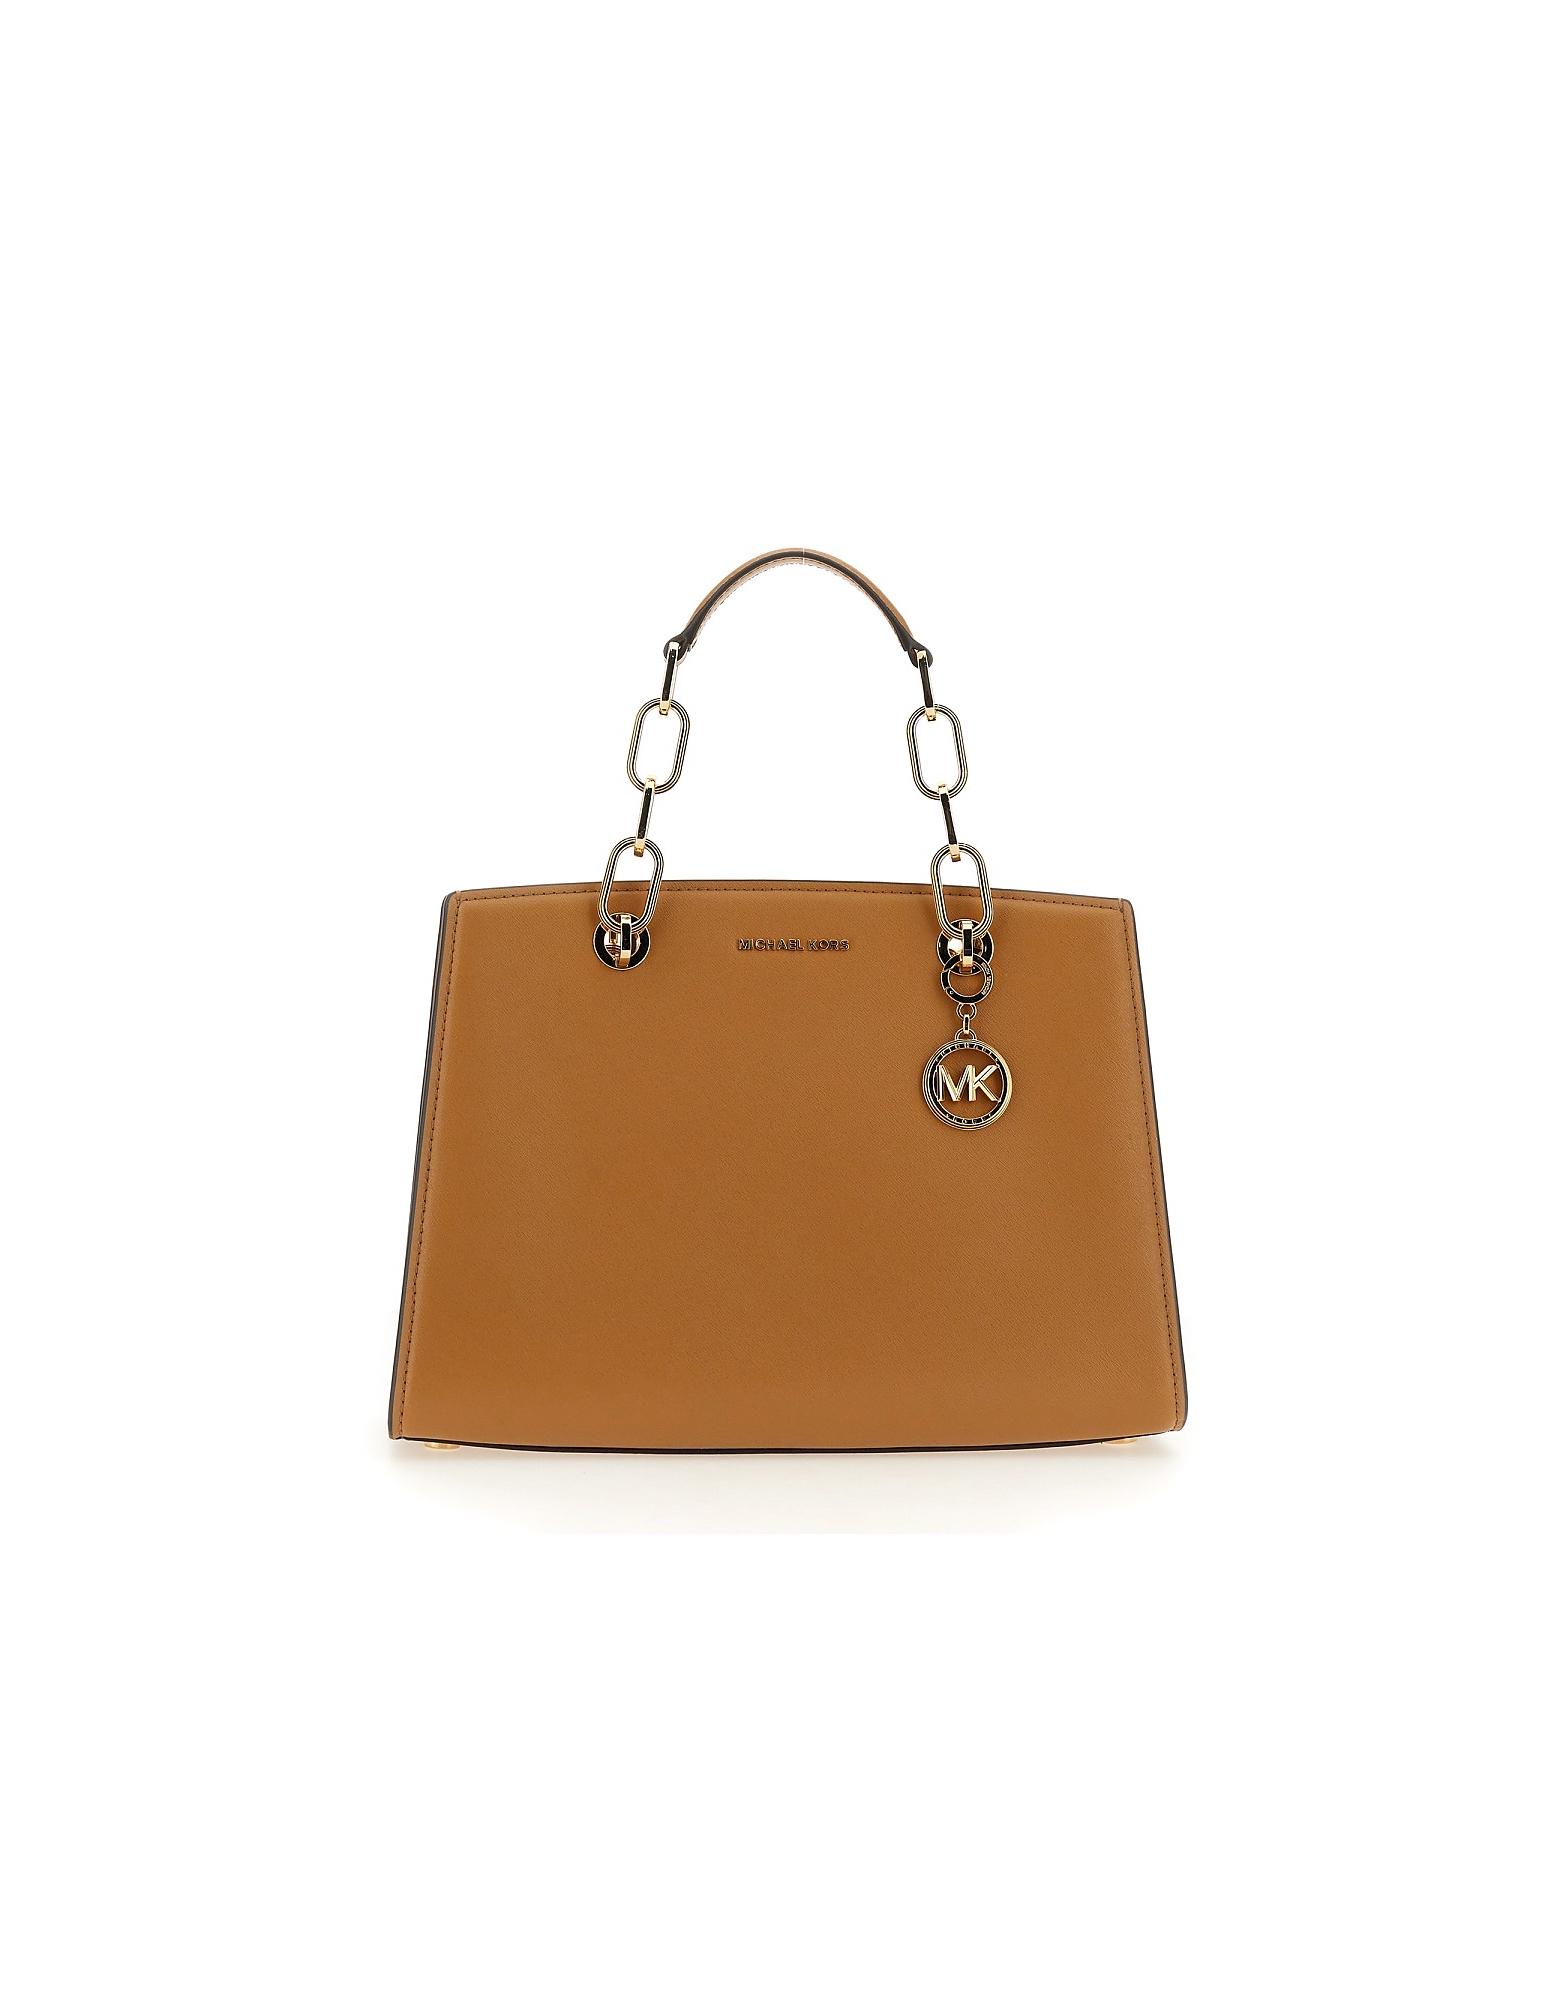 Michael Kors Designer Handbags In Brown